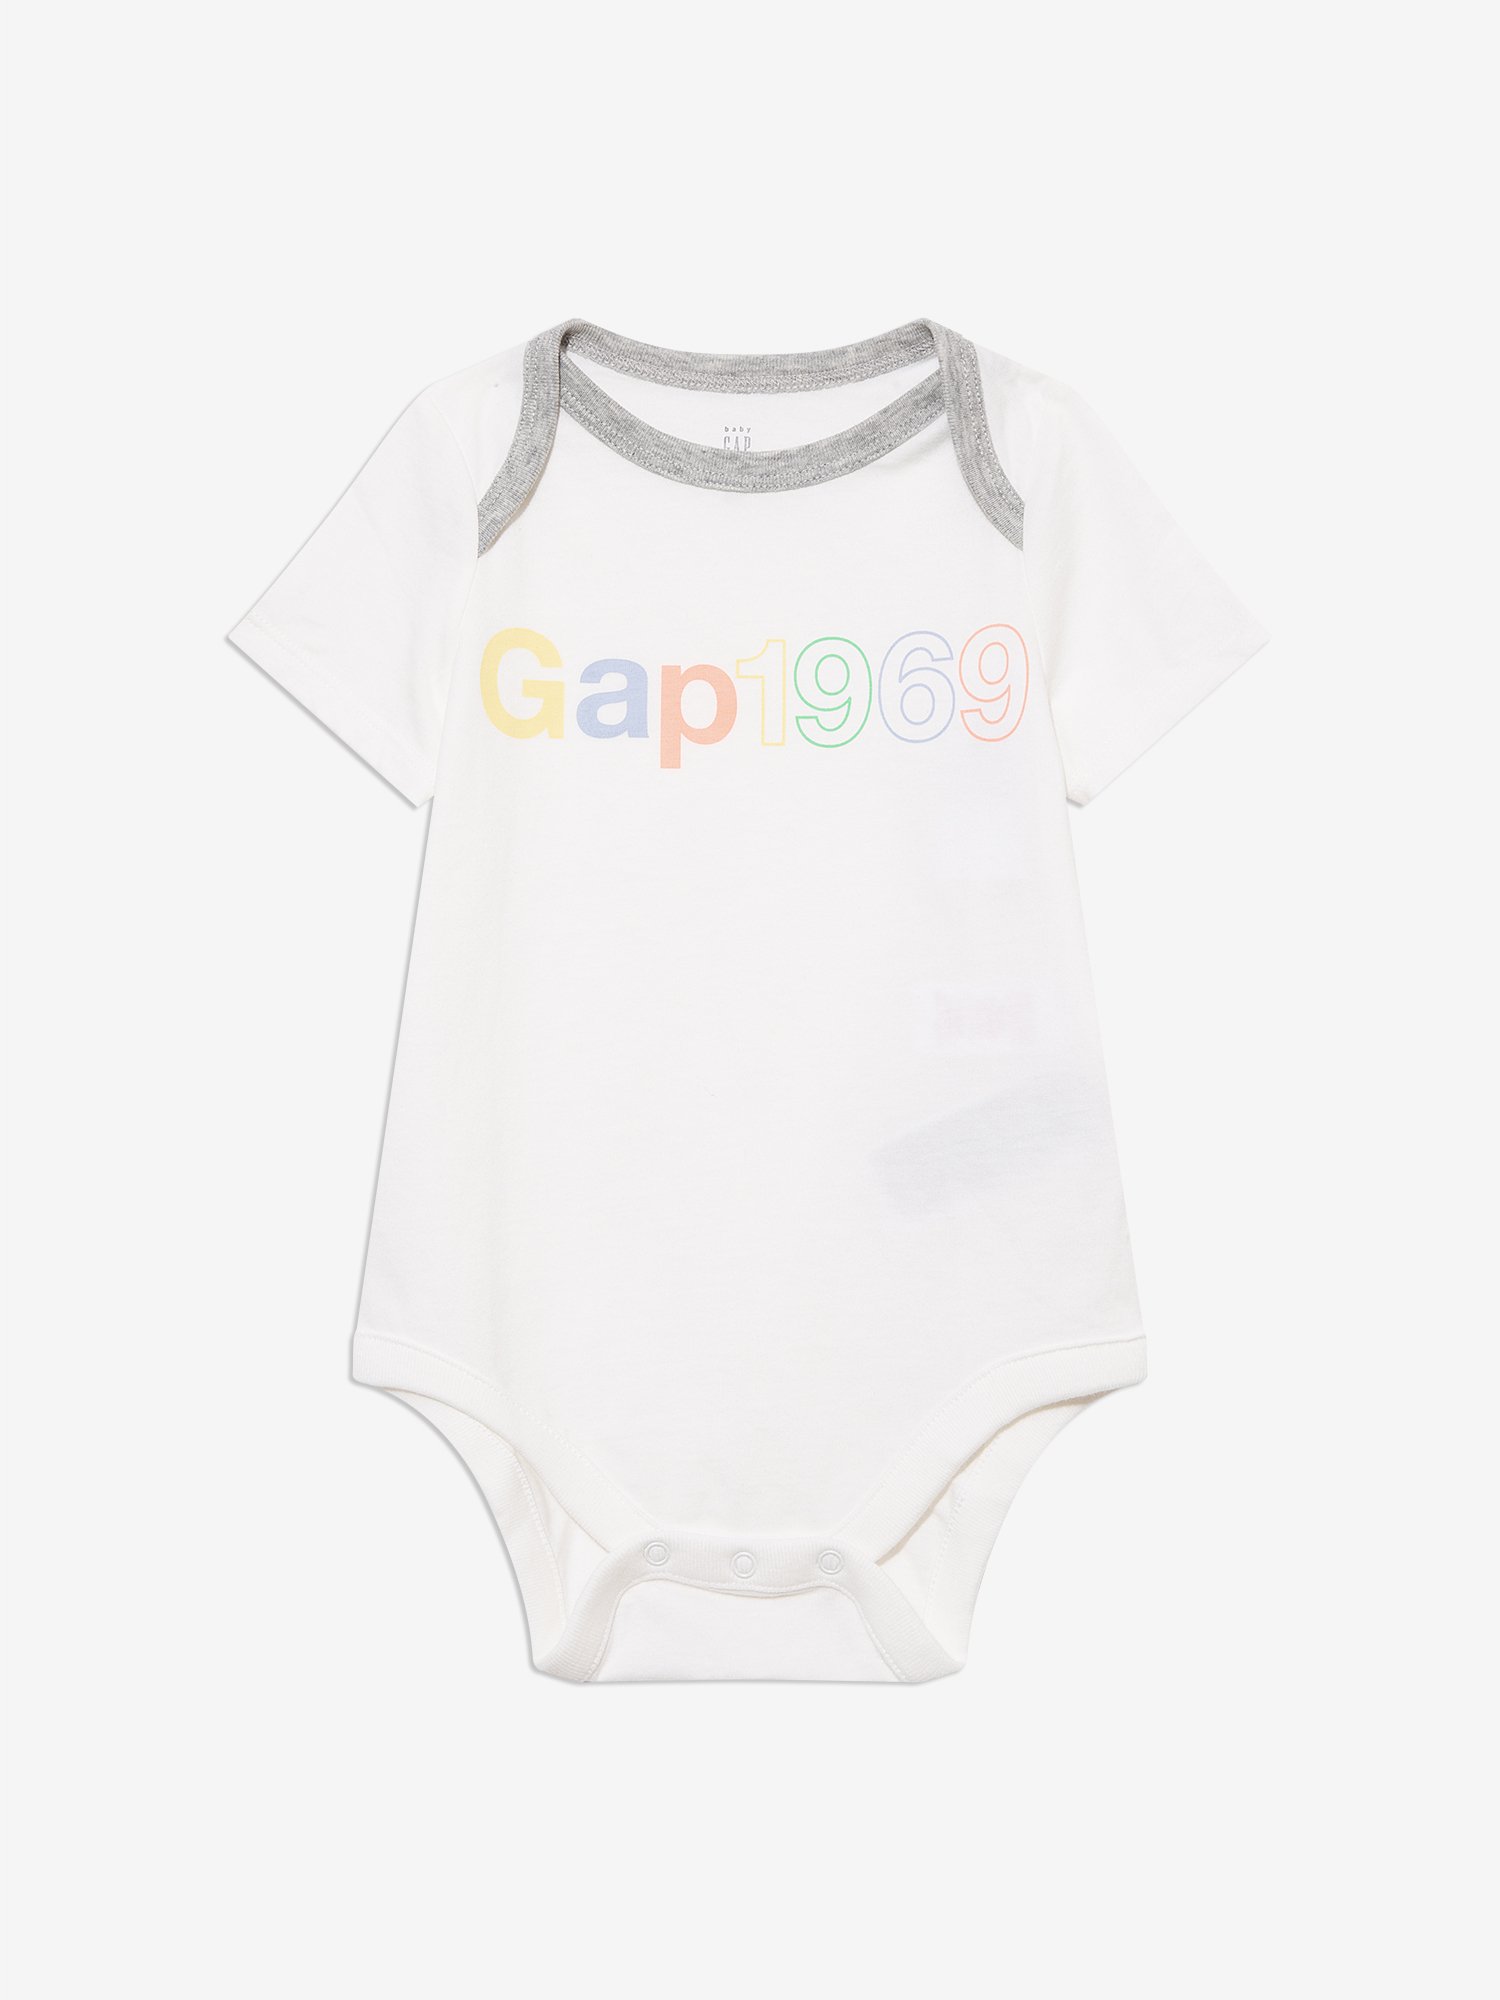 Gap Logo Body product image